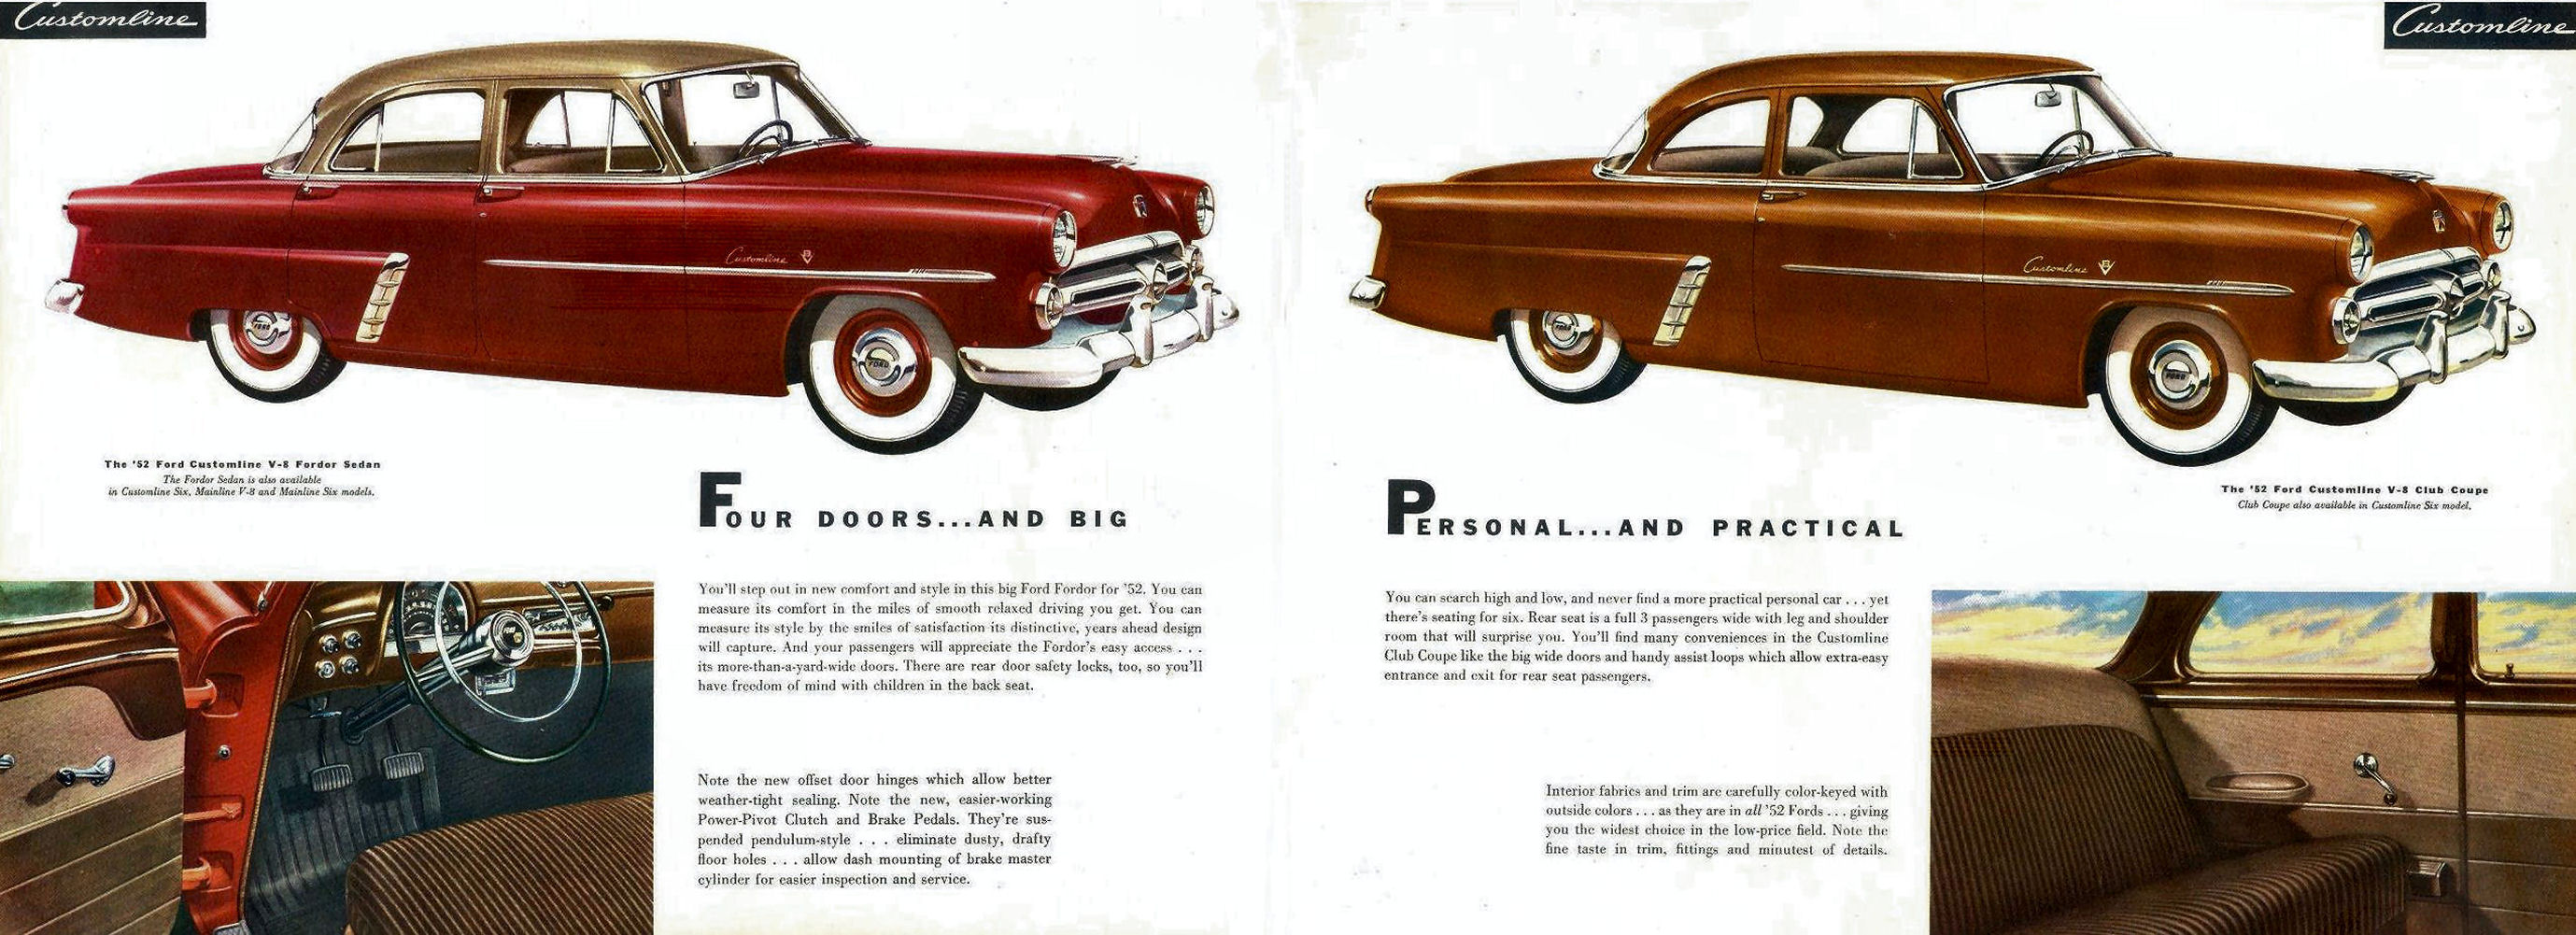 1952_Ford_Full_Line-14-15